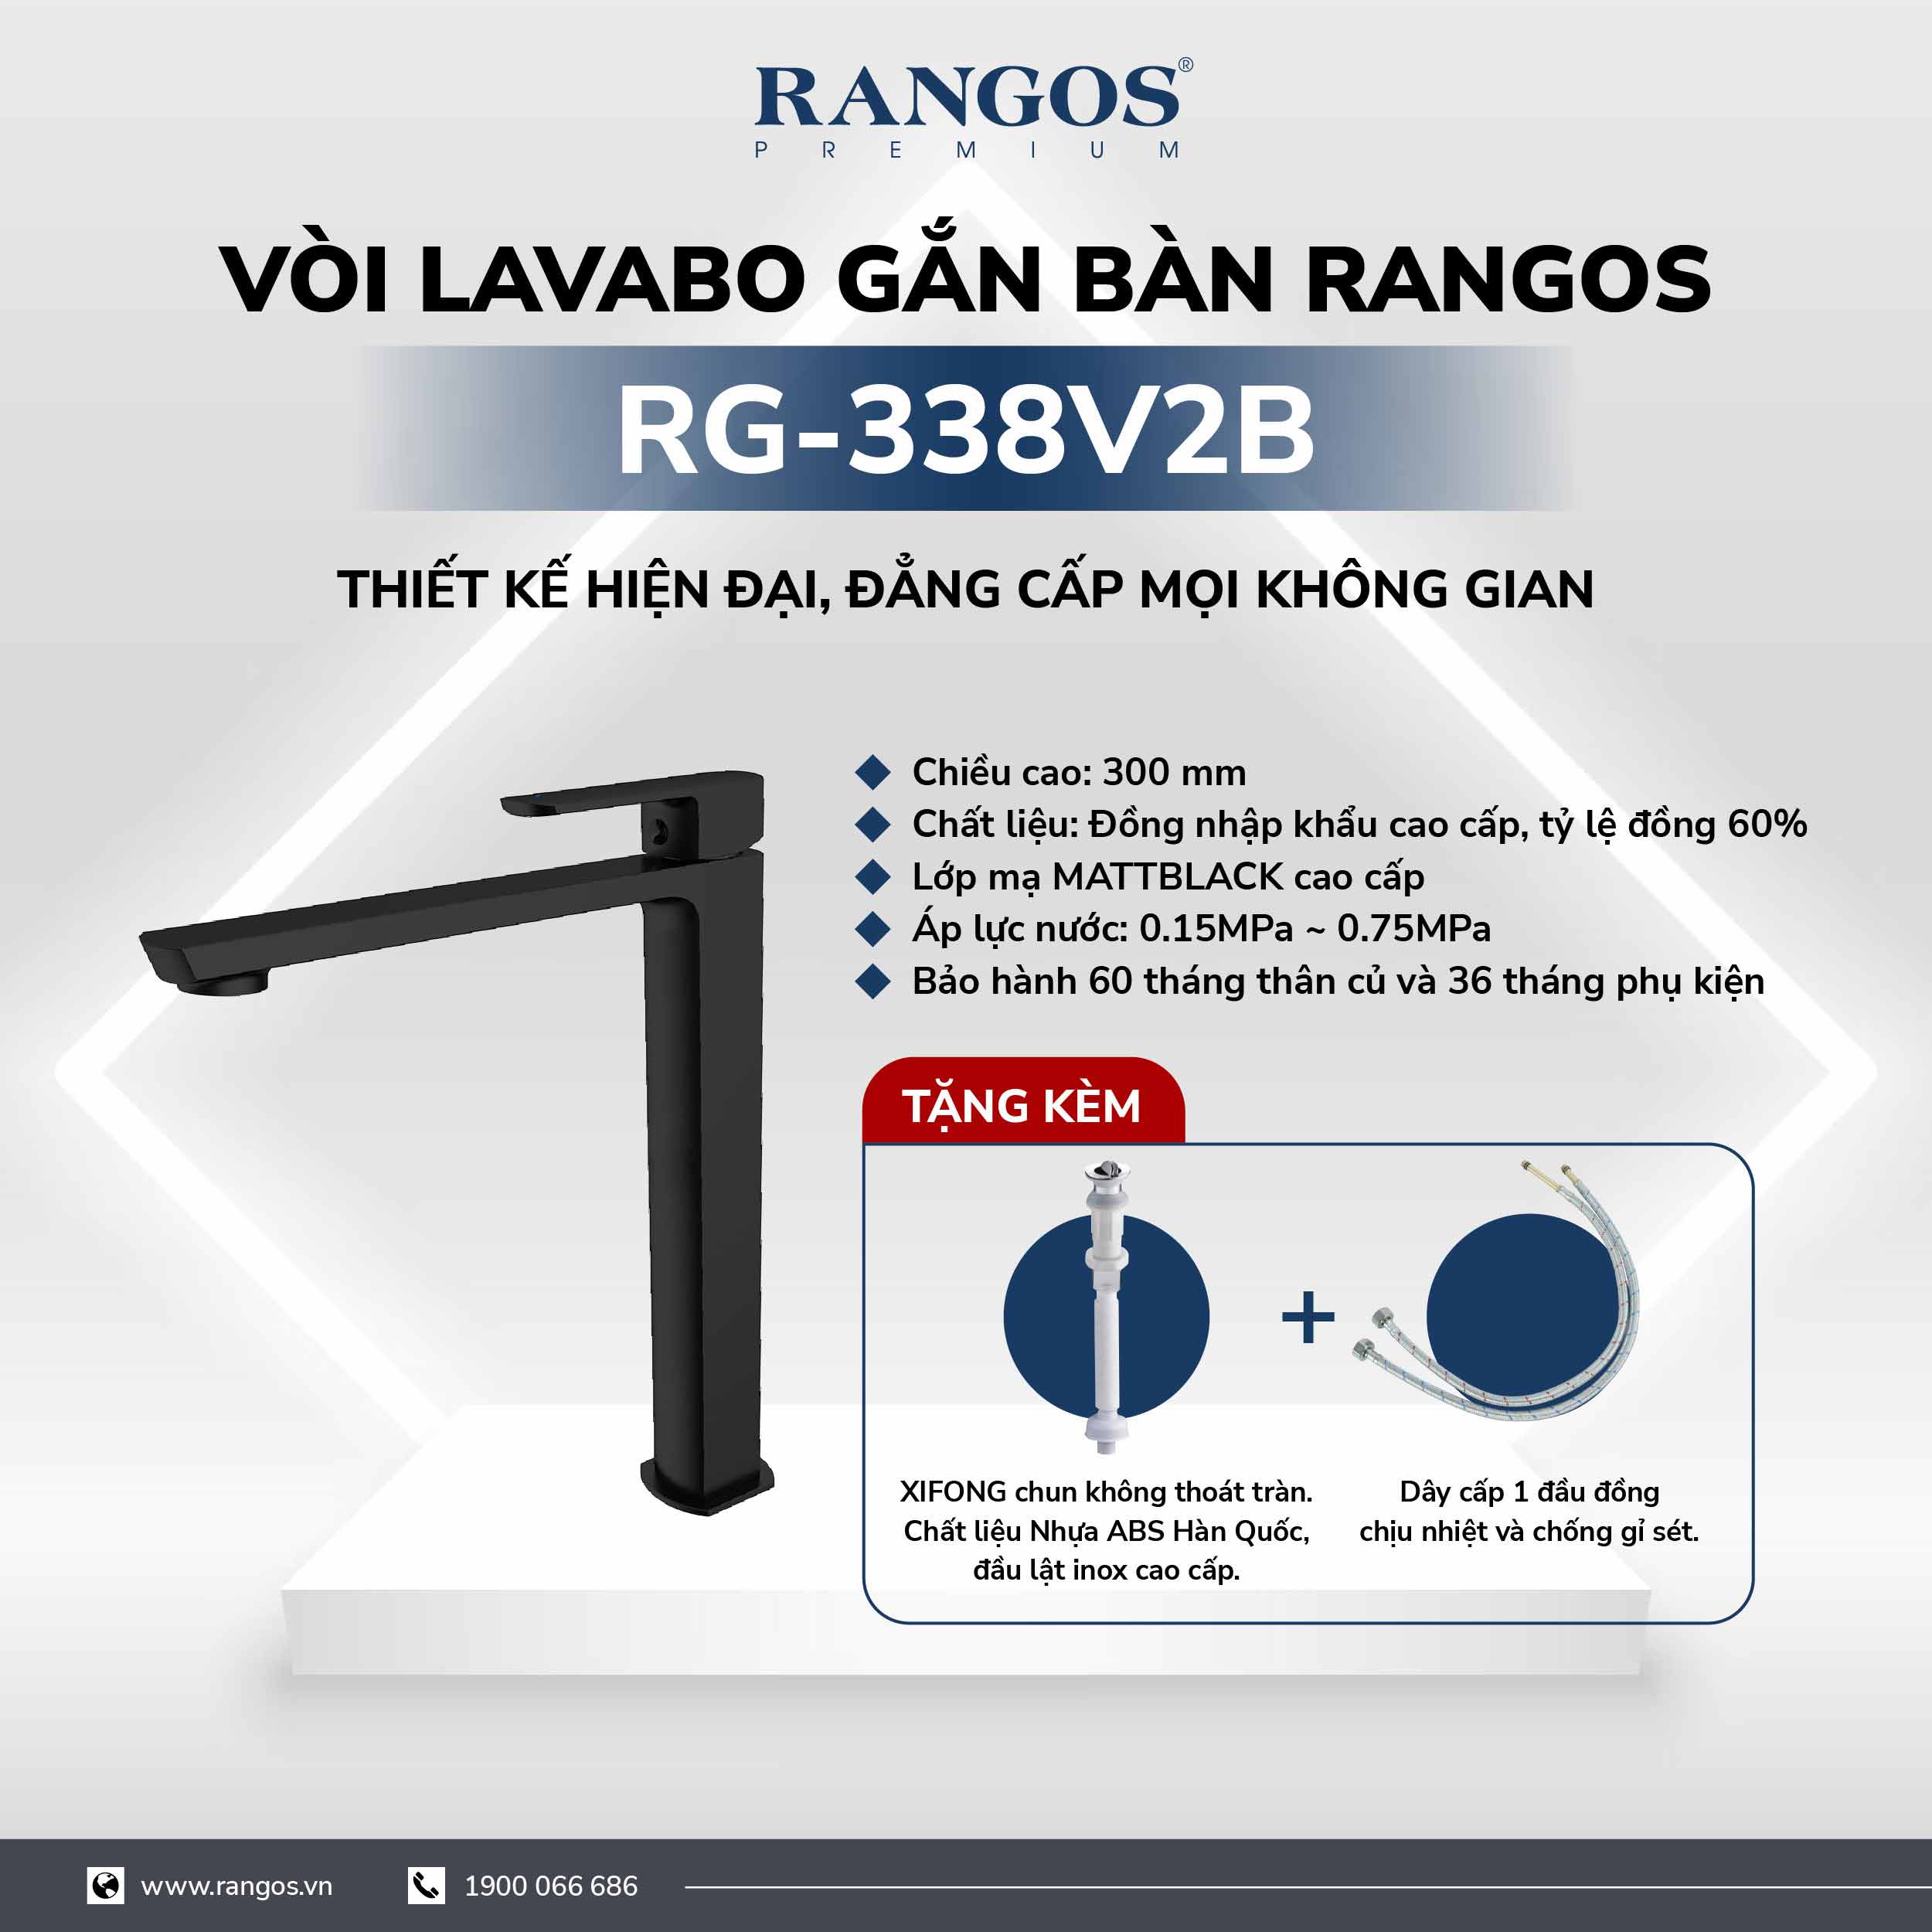 Bộ vòi lavabo gắn bàn Rangos RG-338V2B